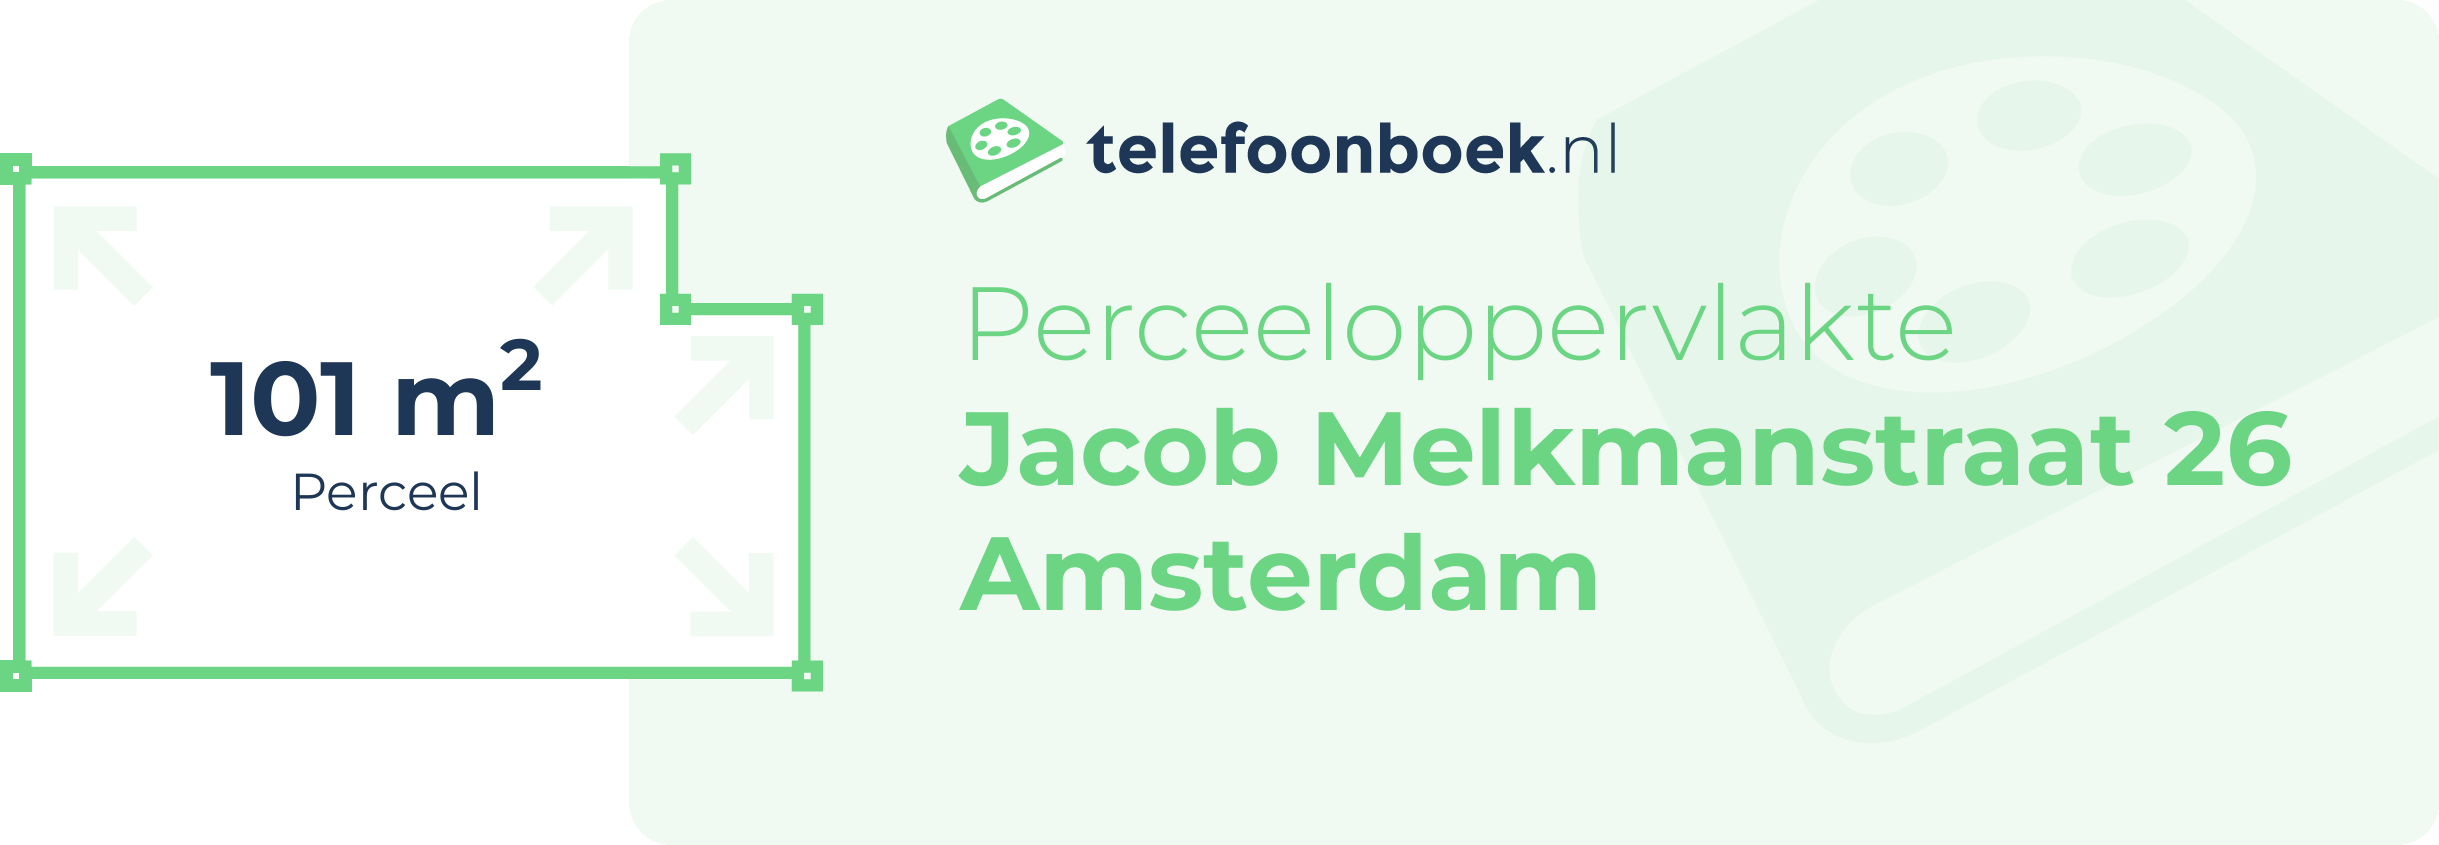 Perceeloppervlakte Jacob Melkmanstraat 26 Amsterdam